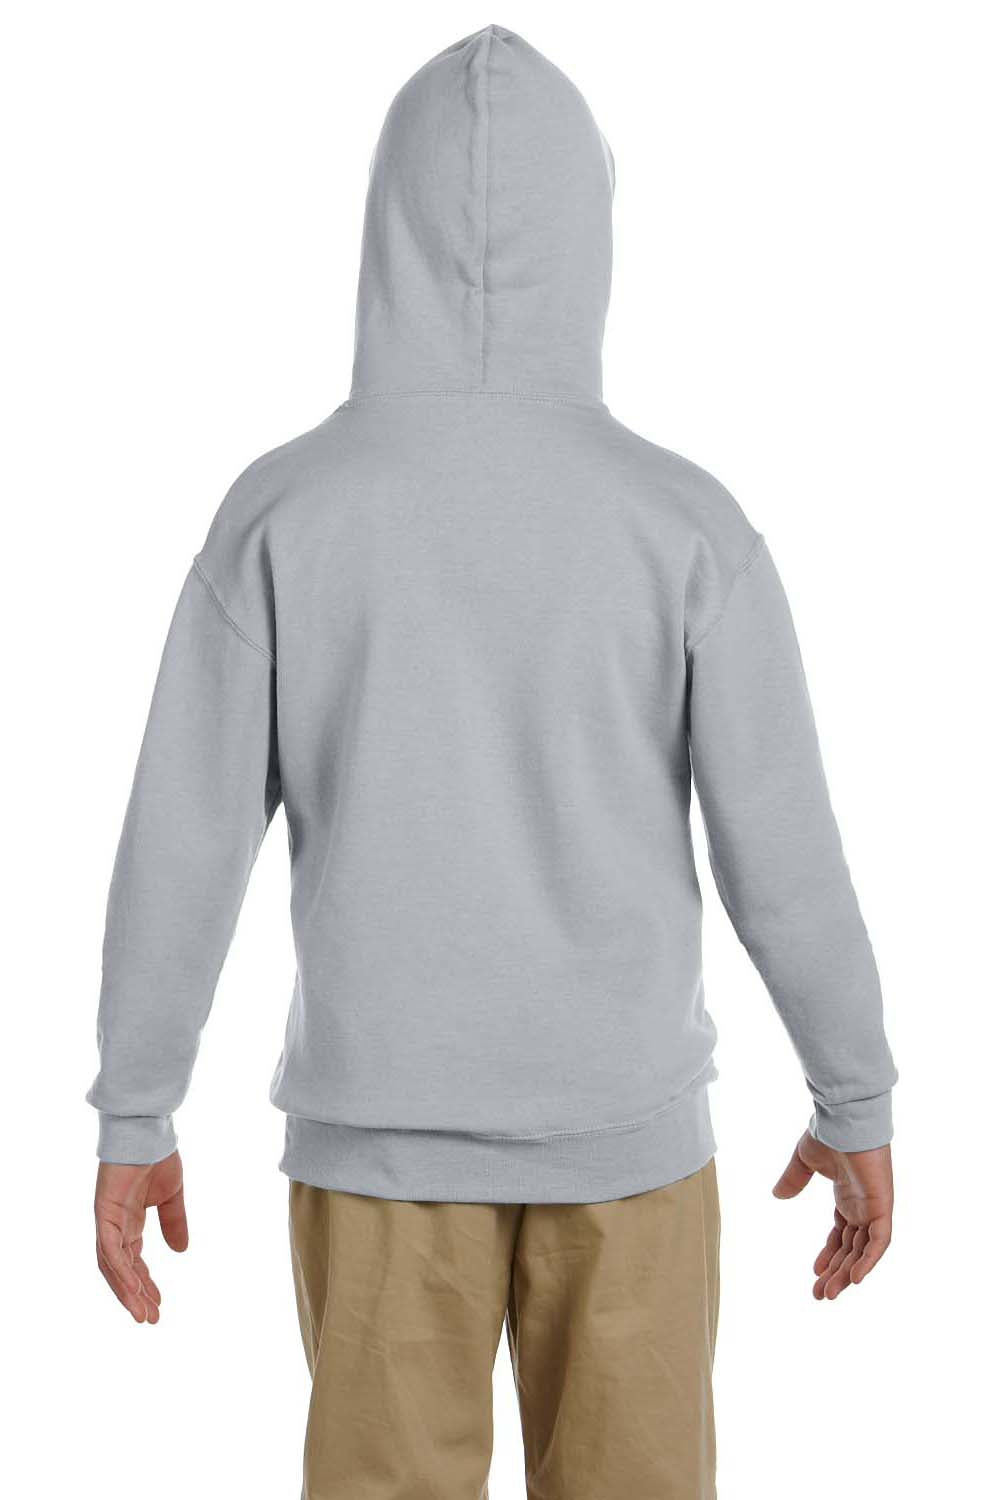 Jerzees 996Y Youth NuBlend Fleece Hooded Sweatshirt Hoodie Oxford Grey Back